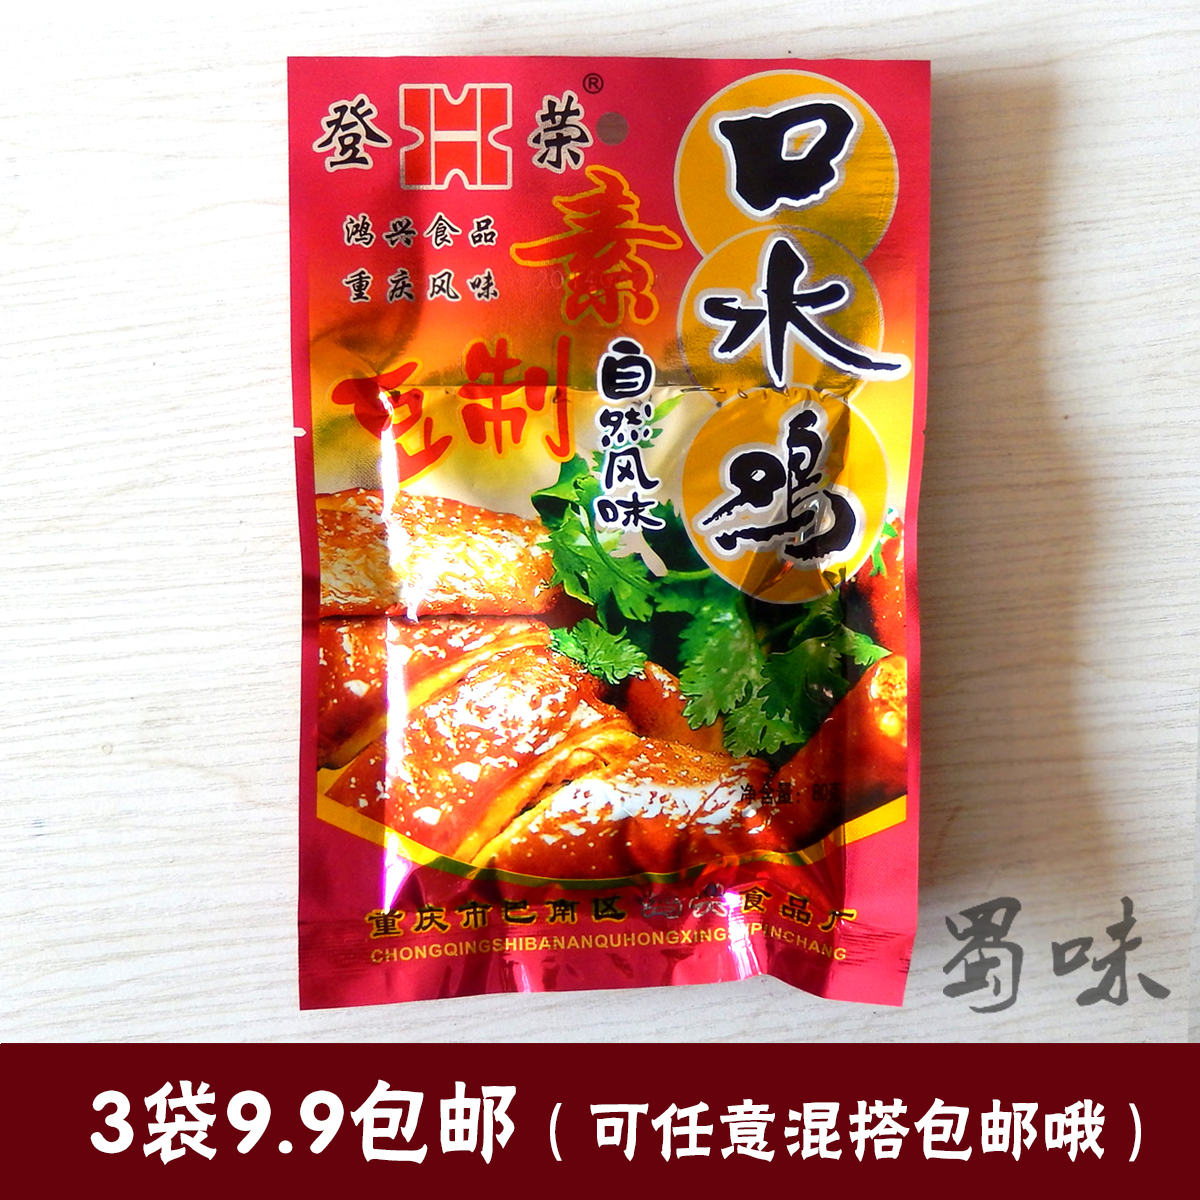 包邮 重庆特产登荣素口水鸡辣条 80G 豆制品素食红辣椒北京烤鸭